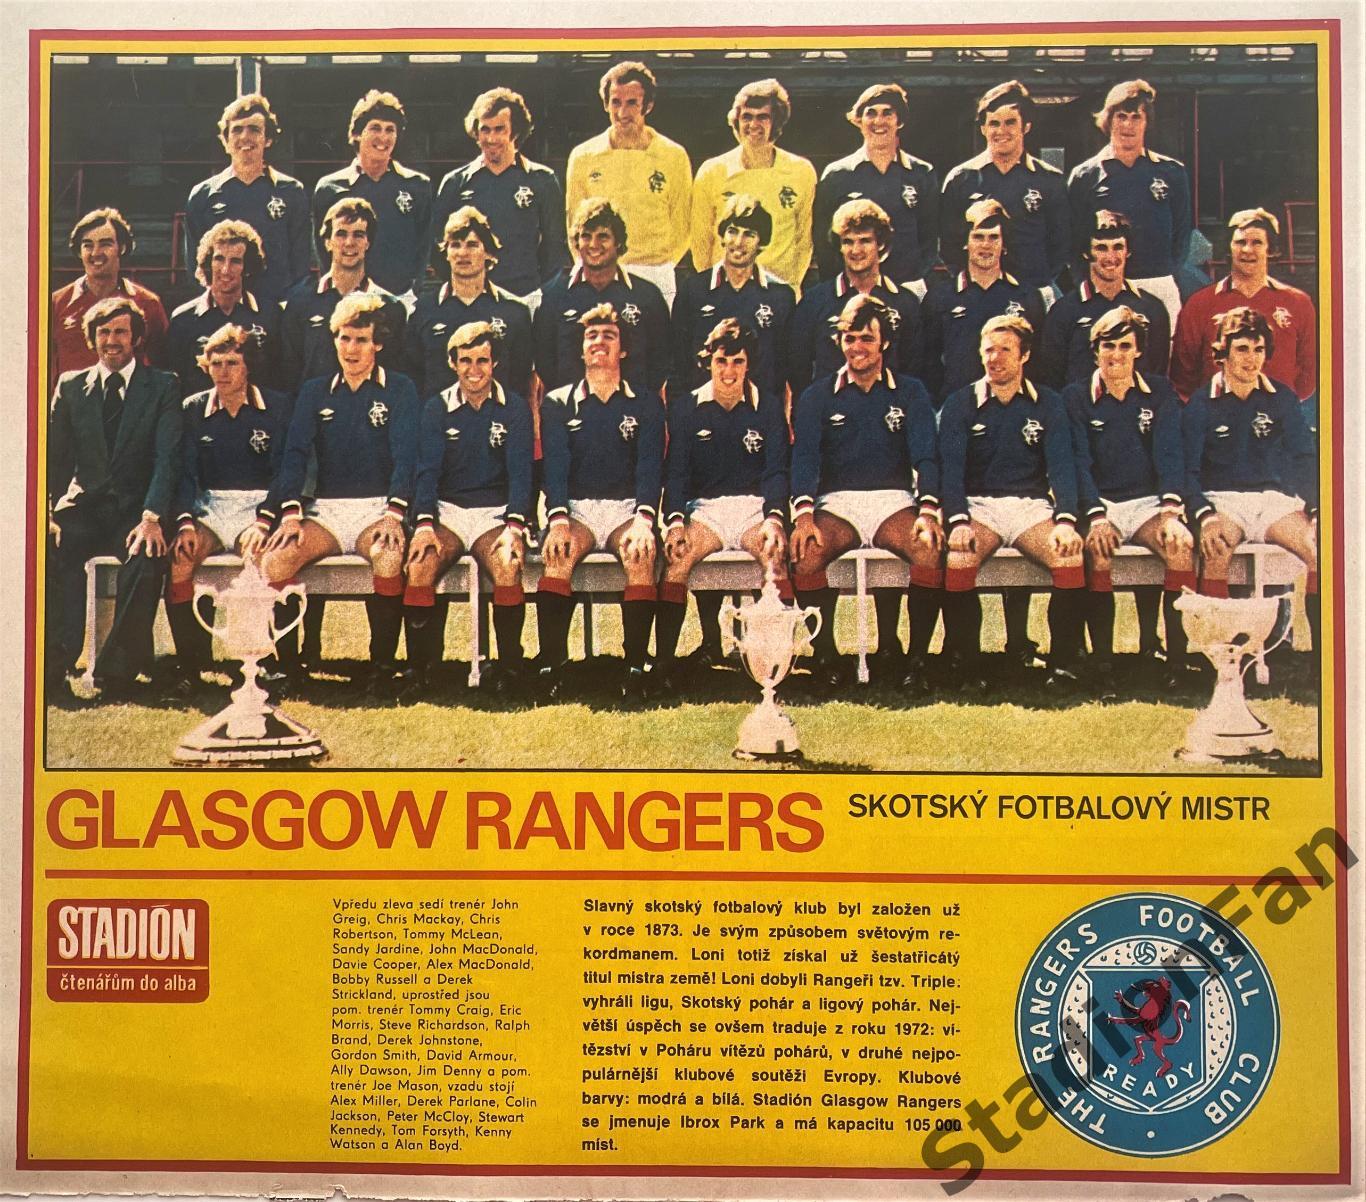 Постер из журнала Stadion - Glasgow Rangers, 1979.